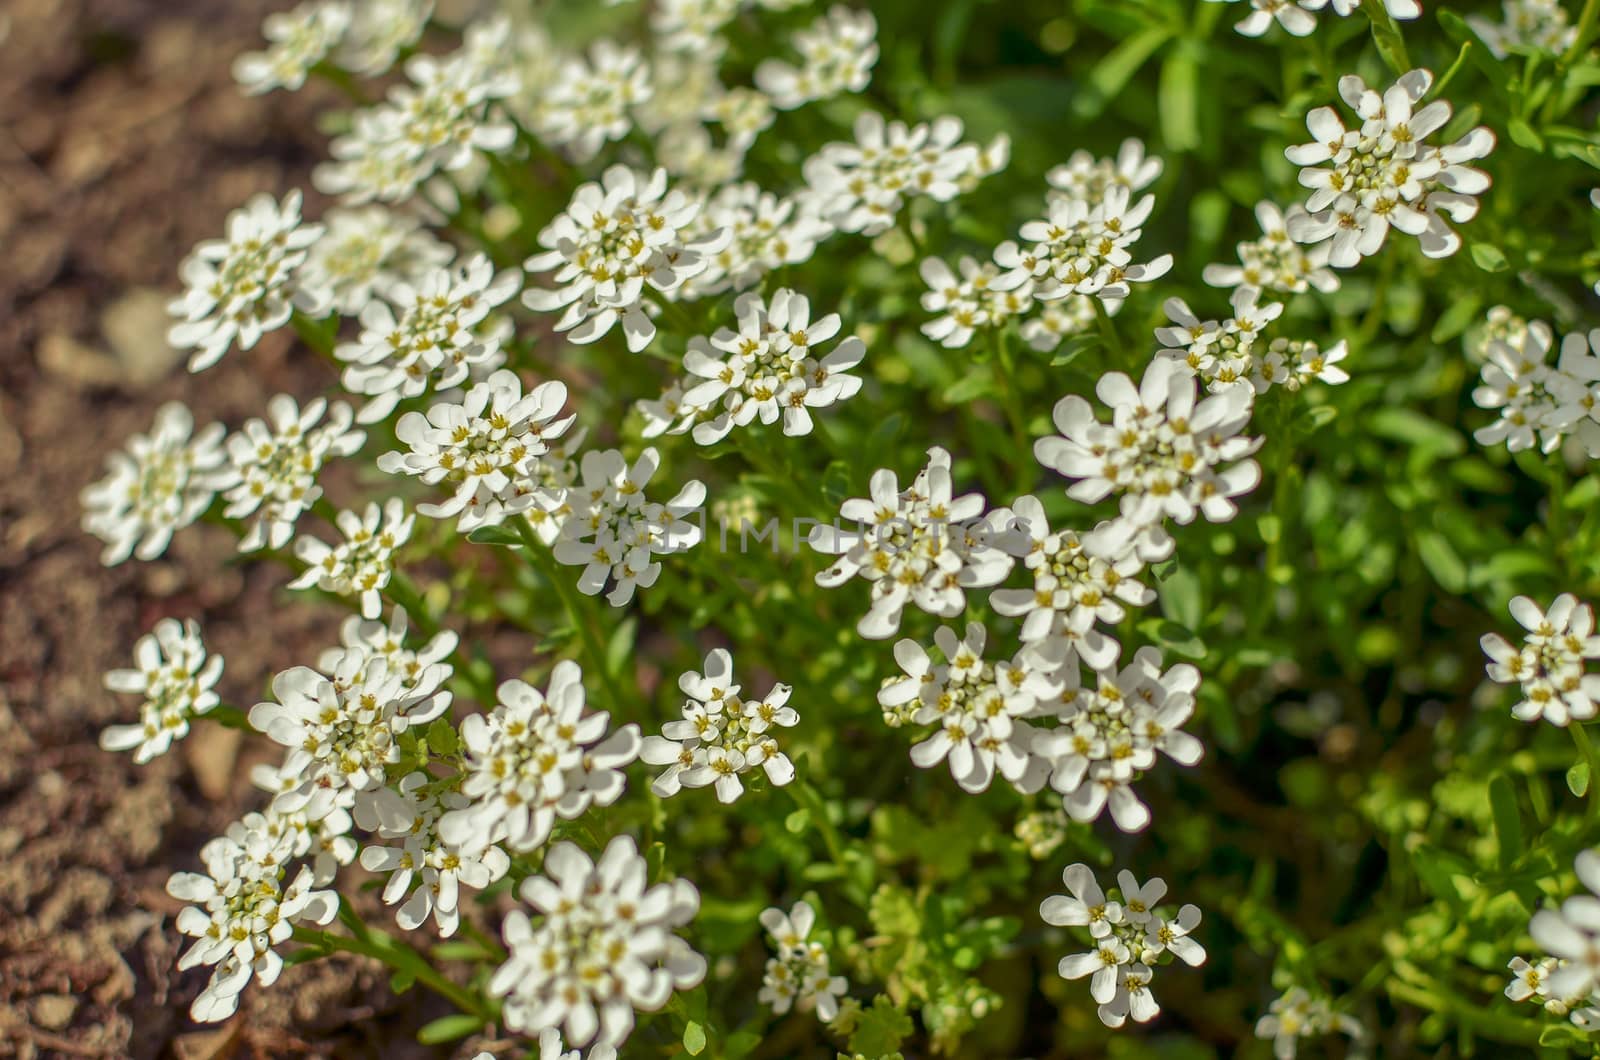 Iberis amara or bitter candytuft many white flowers